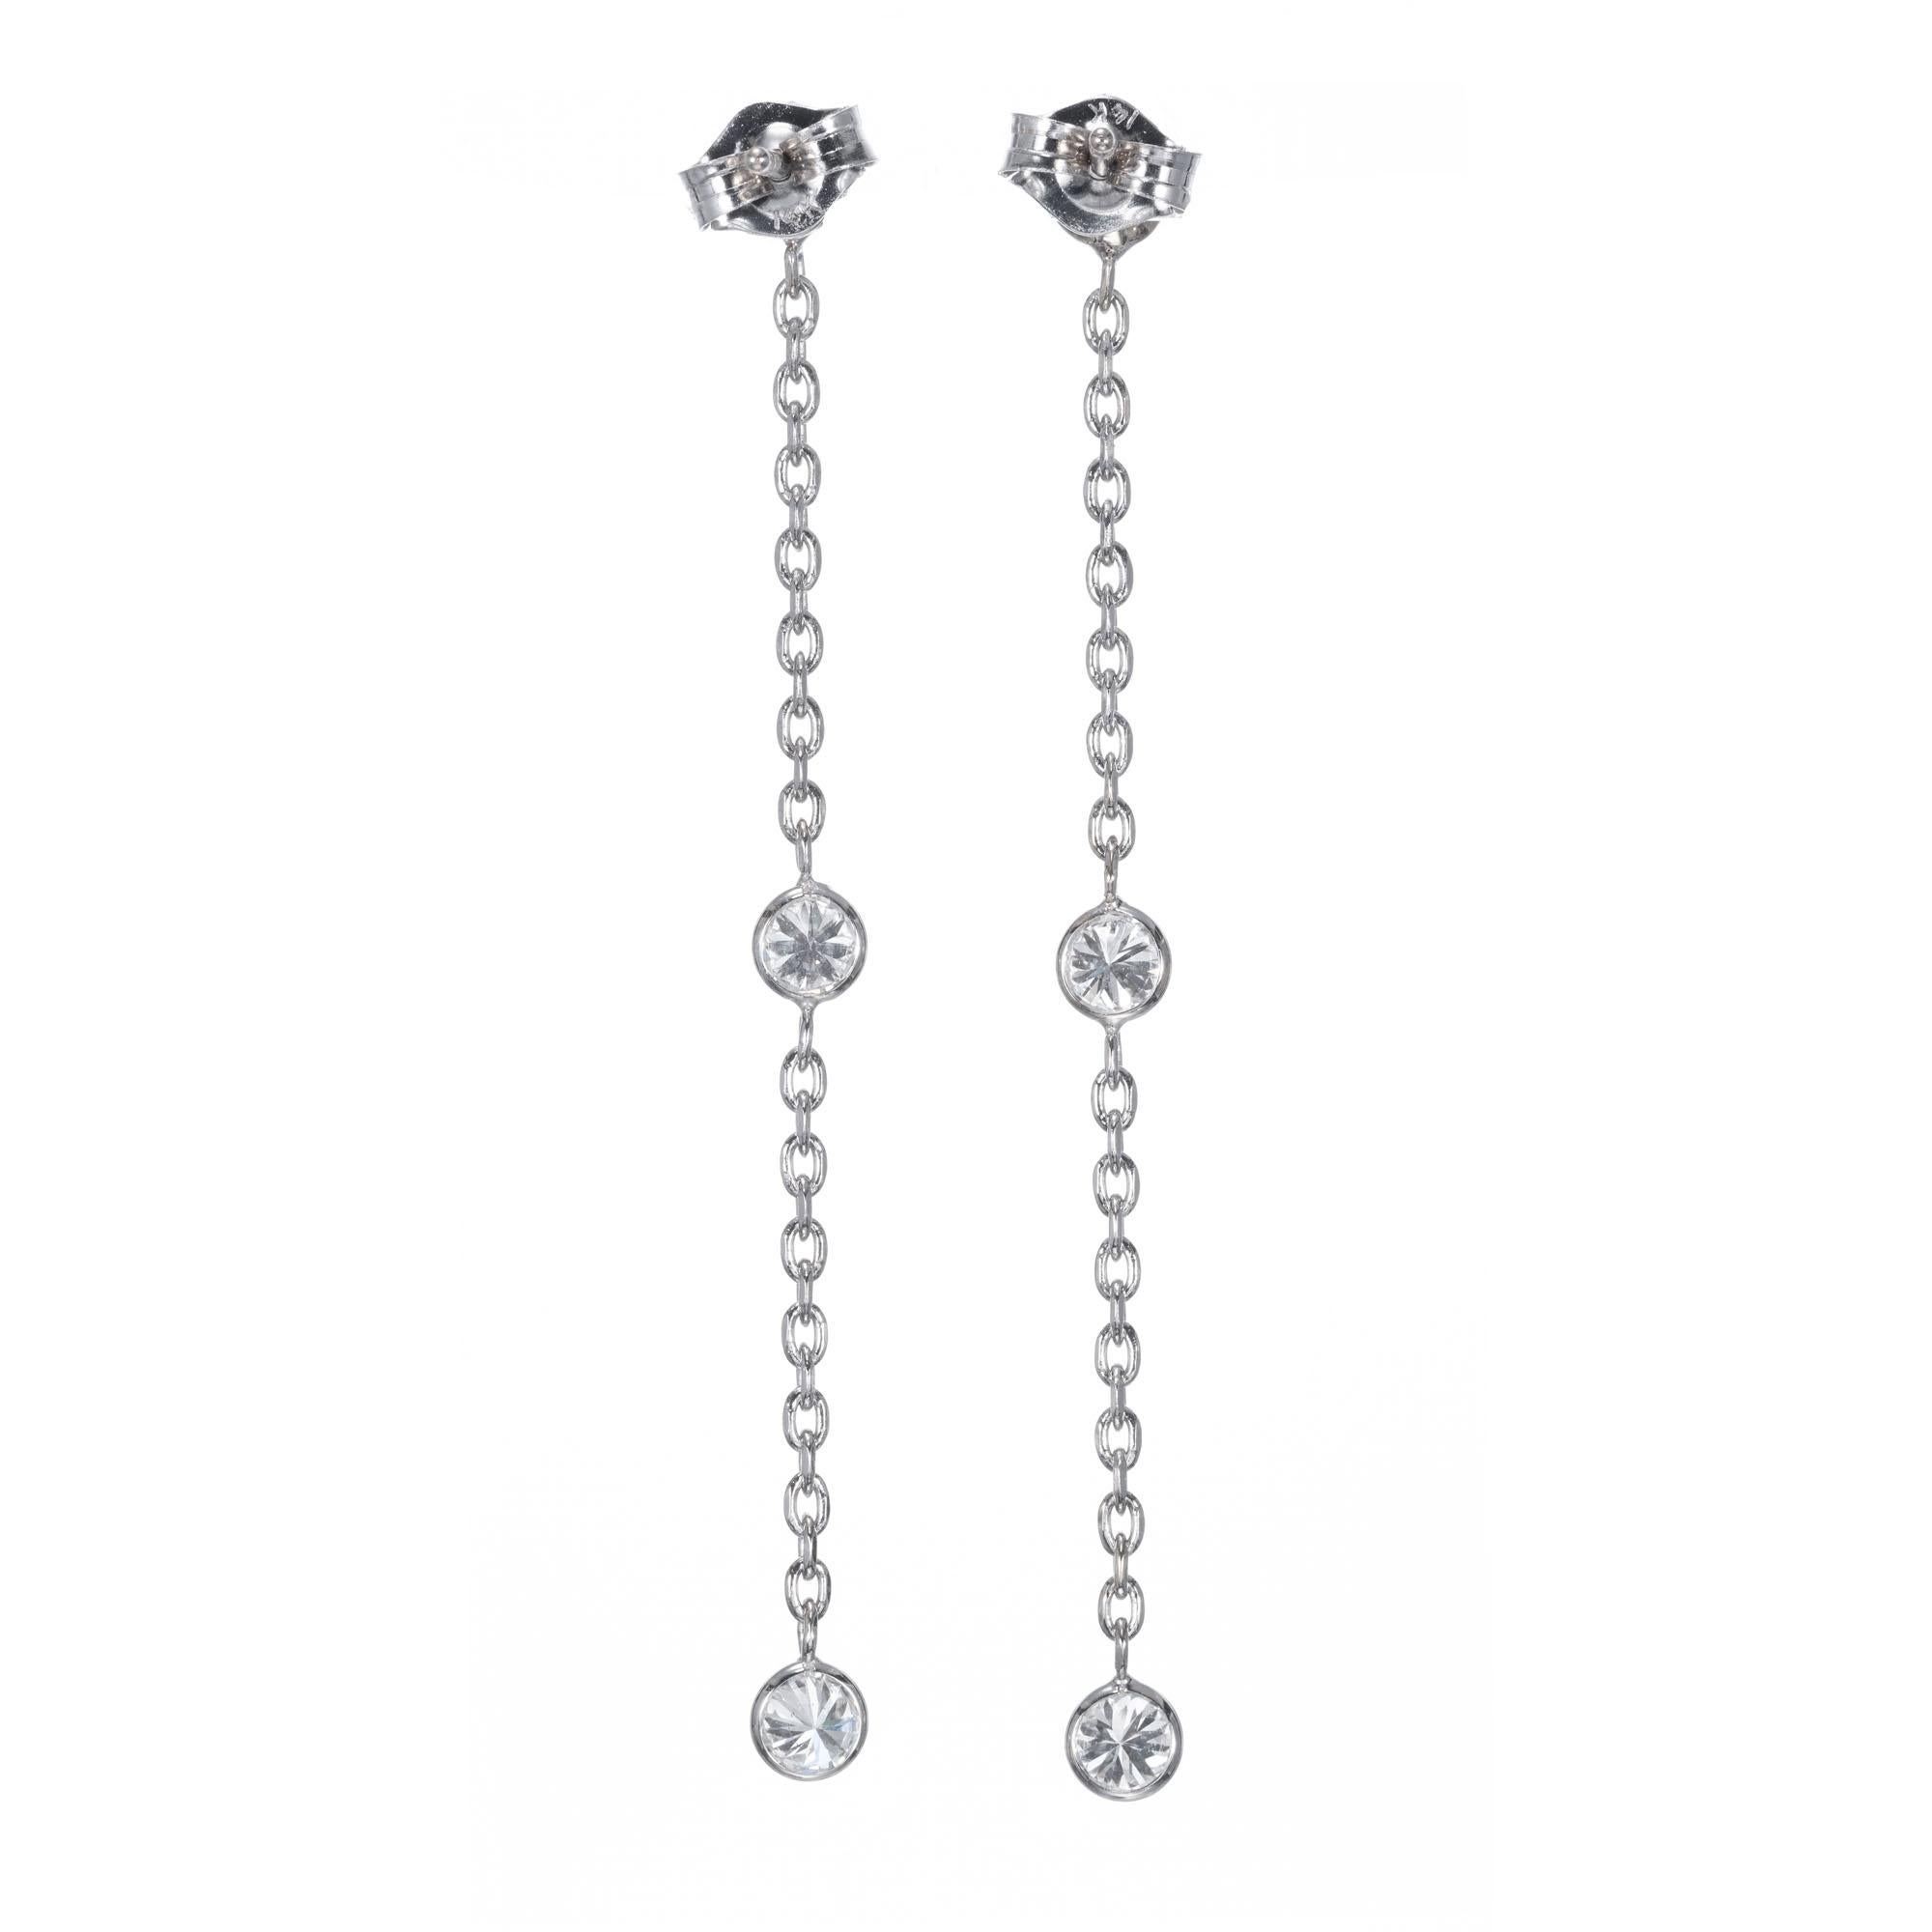 3 diamond drop earrings